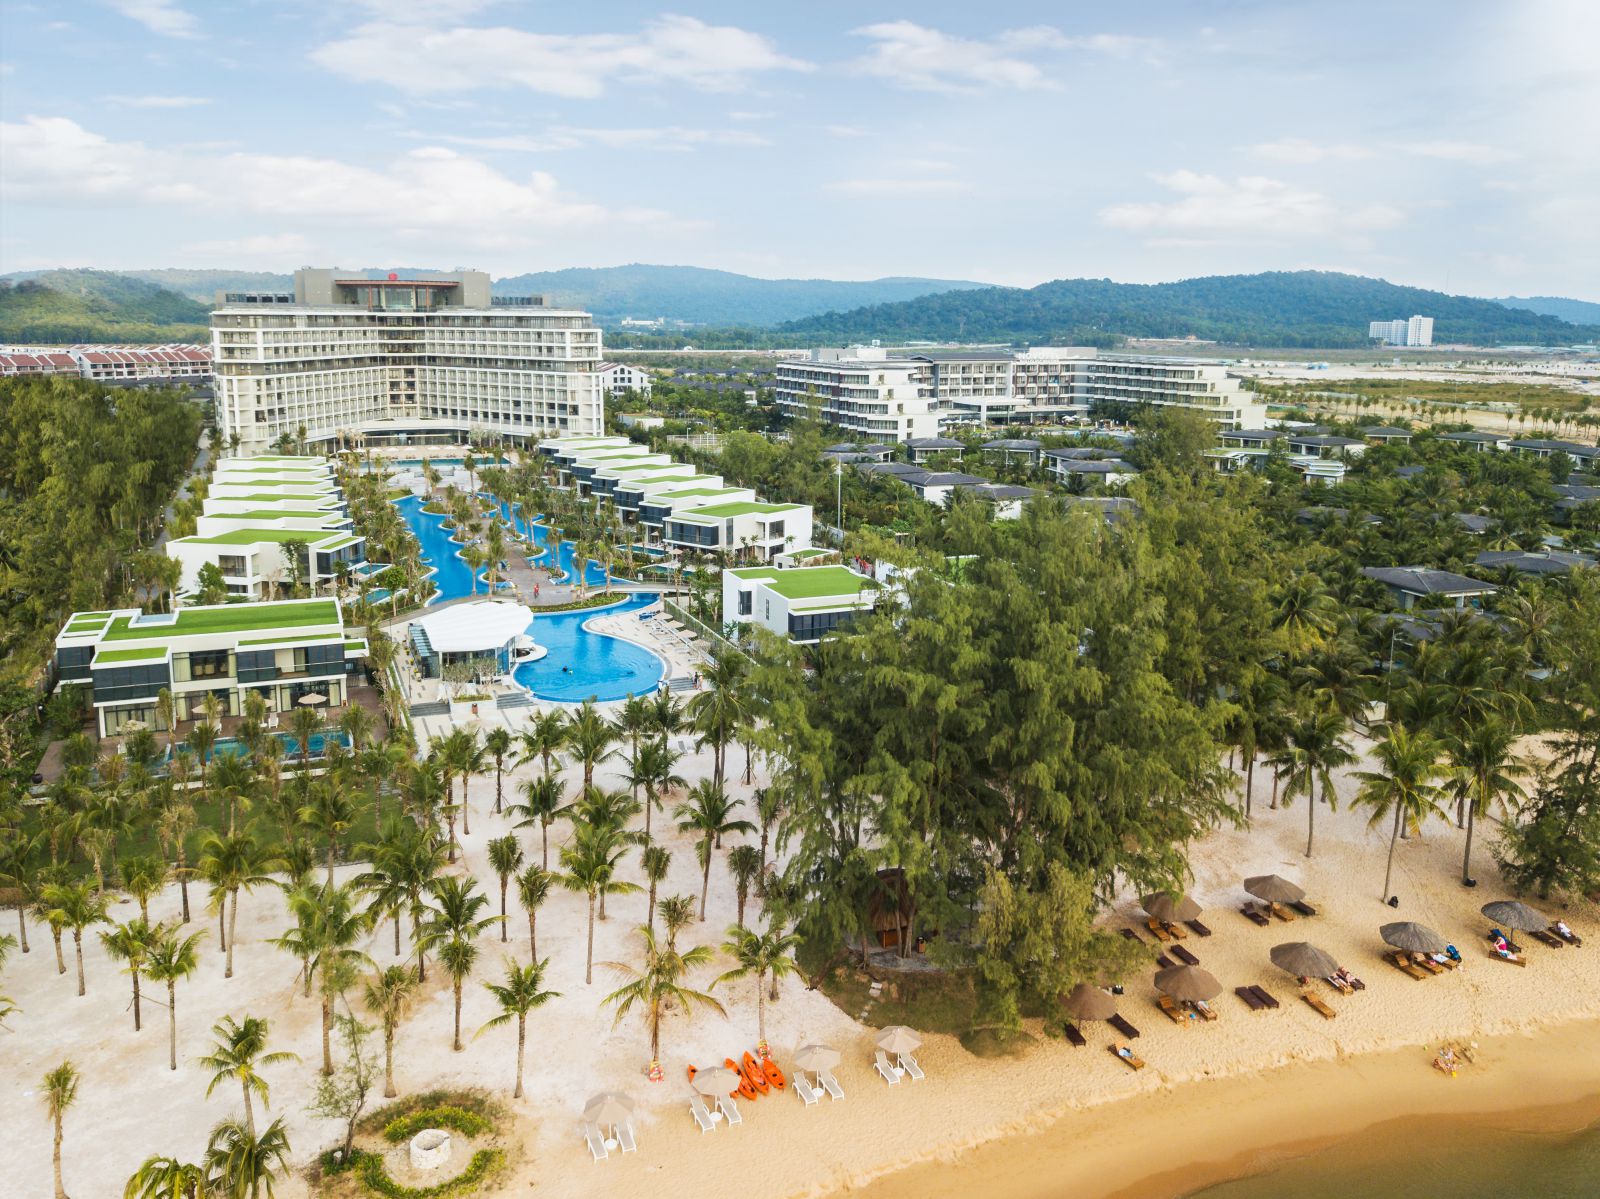 Best Western Premier Sonasea Phu Quoc là khu nghỉ dưỡng được yêu thích nhất năm 2020 tại lễ trao giải “Dự án đáng sống 2020”.